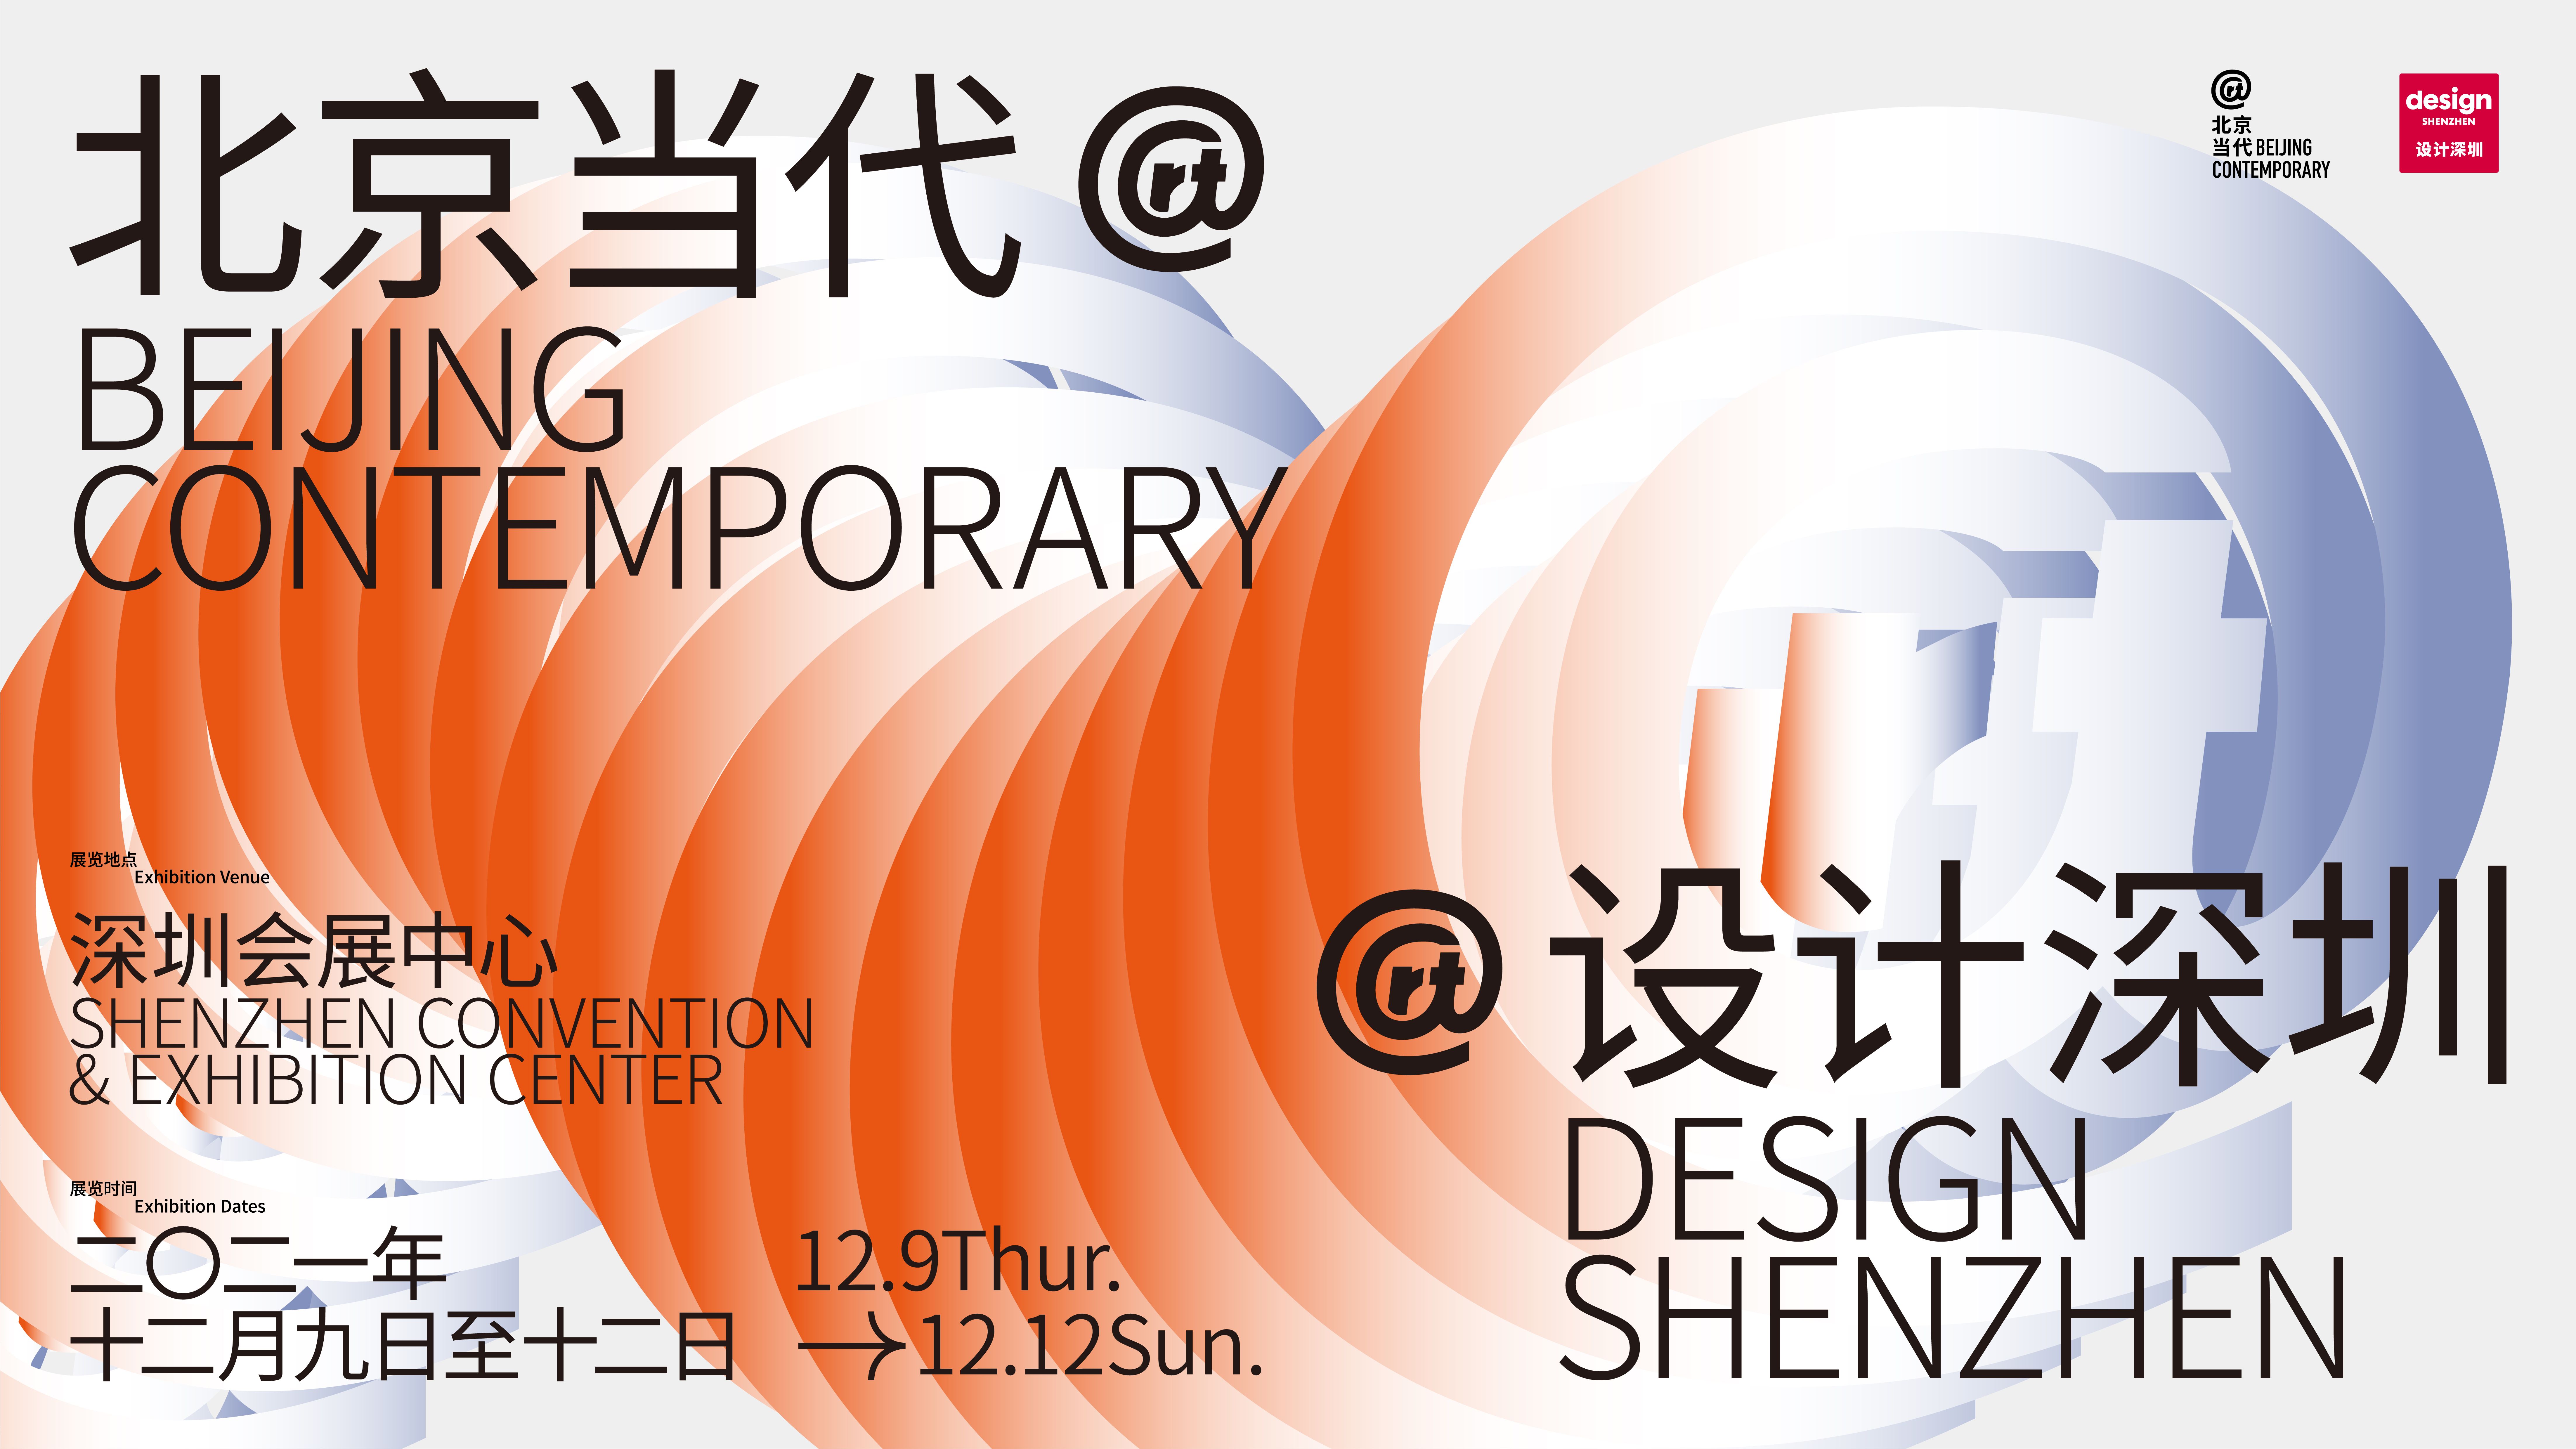 Beijing Contemporary @ Design Shenzhen